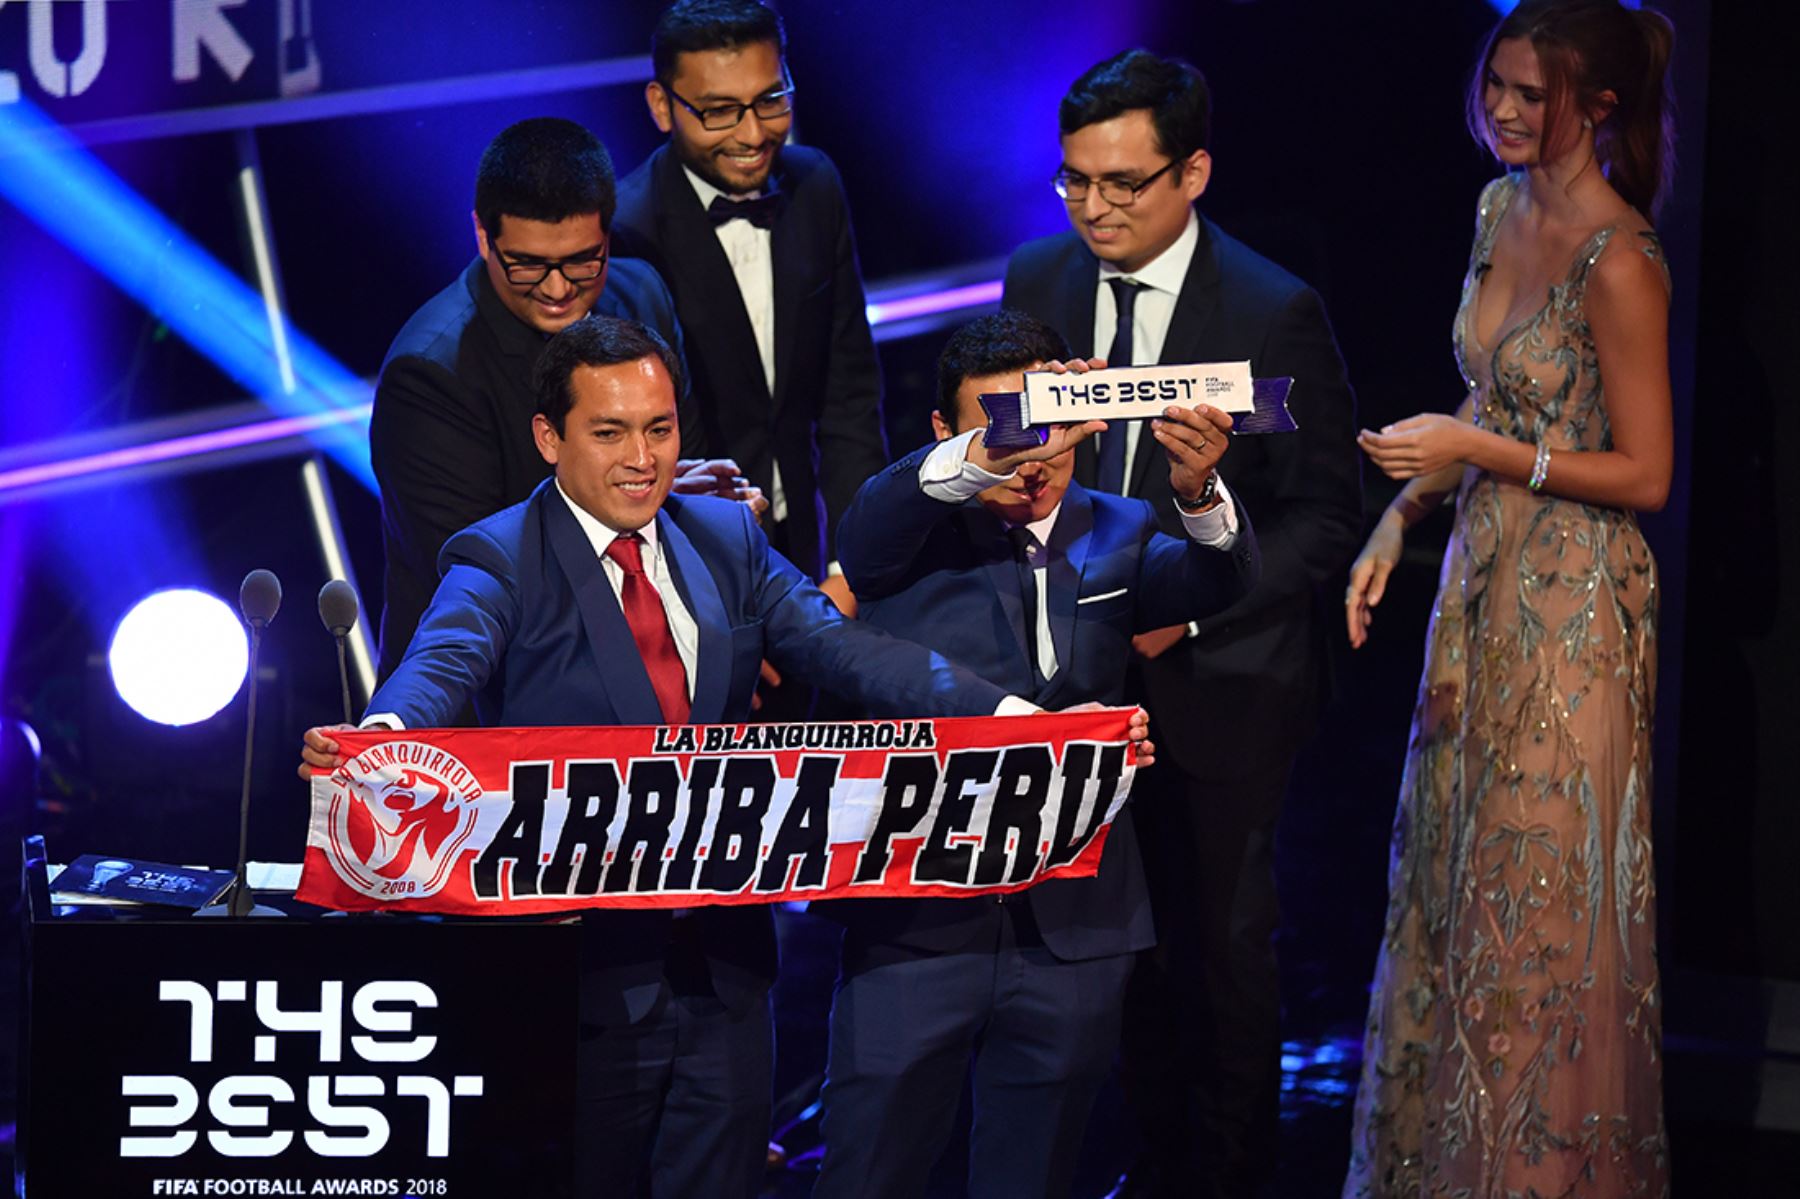 La hinchada peruana que llegó a Rusia para acompañar y alentar a su seleccionado de fútbol ganó el premio The Best Fifa 2018, el 24 de setiembre de 2018 en Londres. Foto: AFP